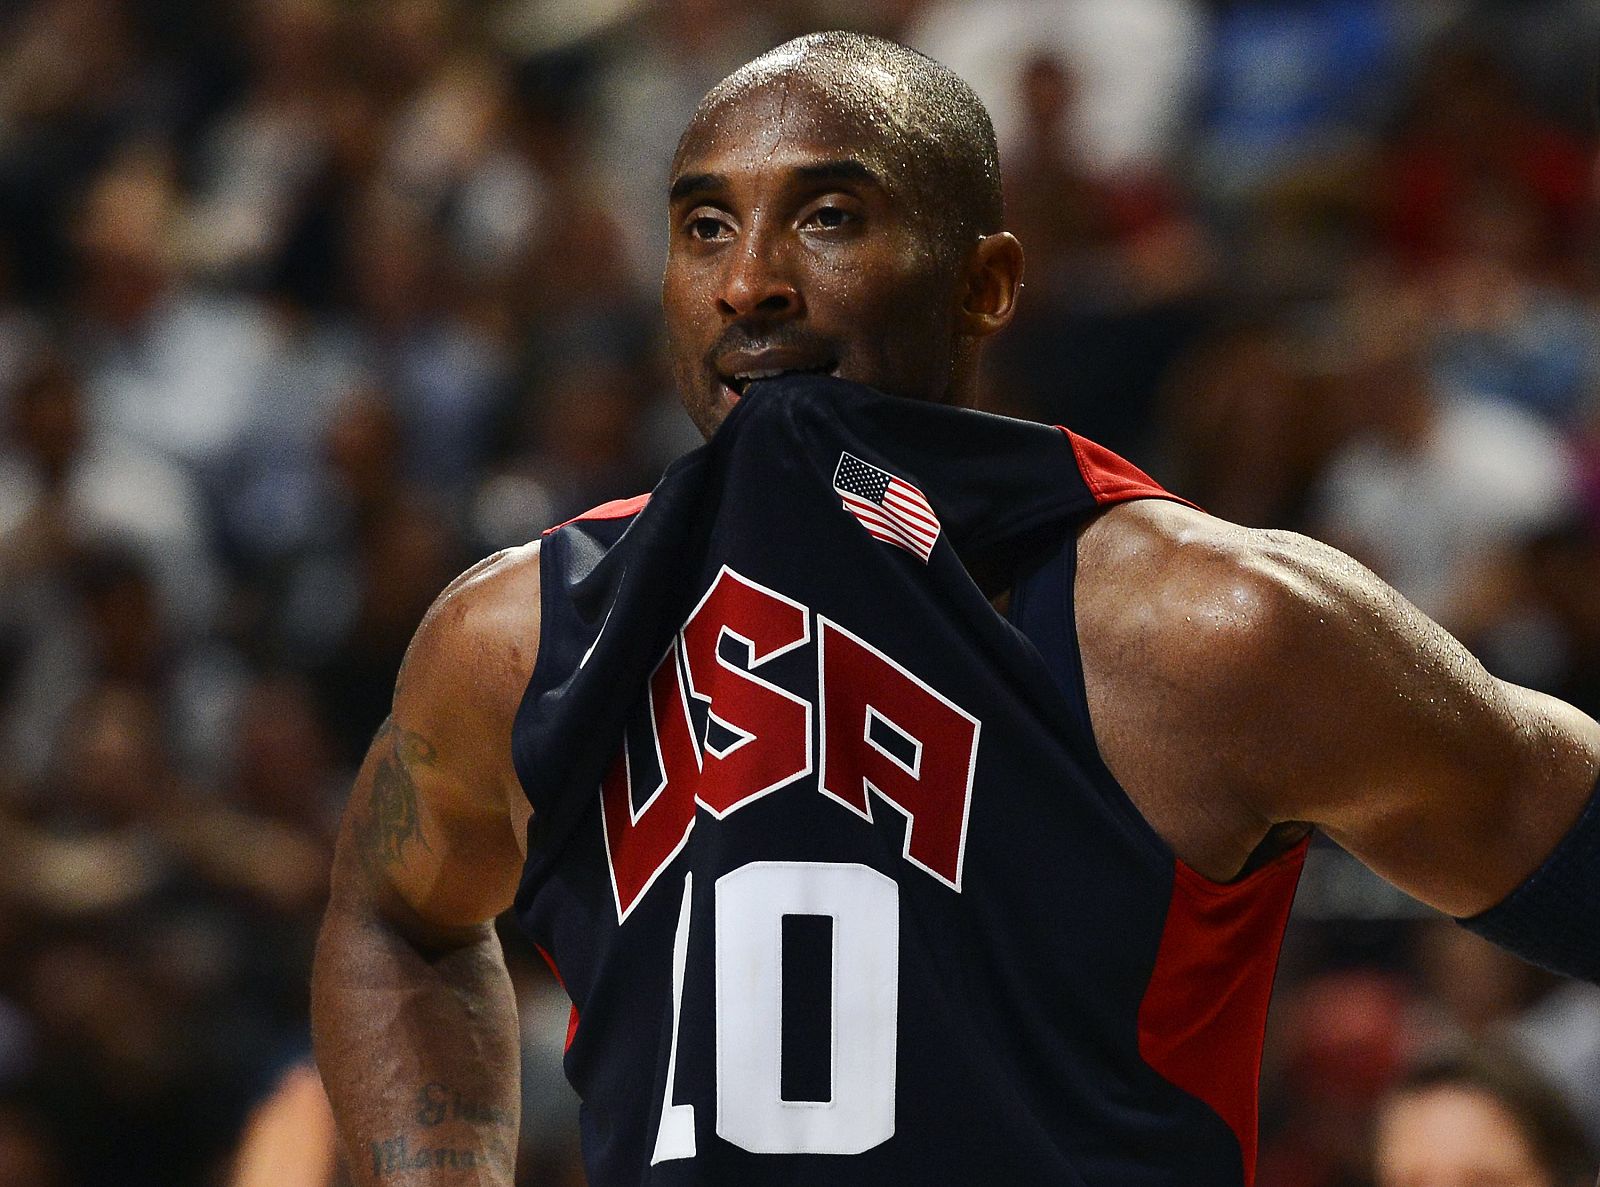 El jugador estadounidense de baloncesto, Kobe Bryant, elogia a su amigo Gasol.